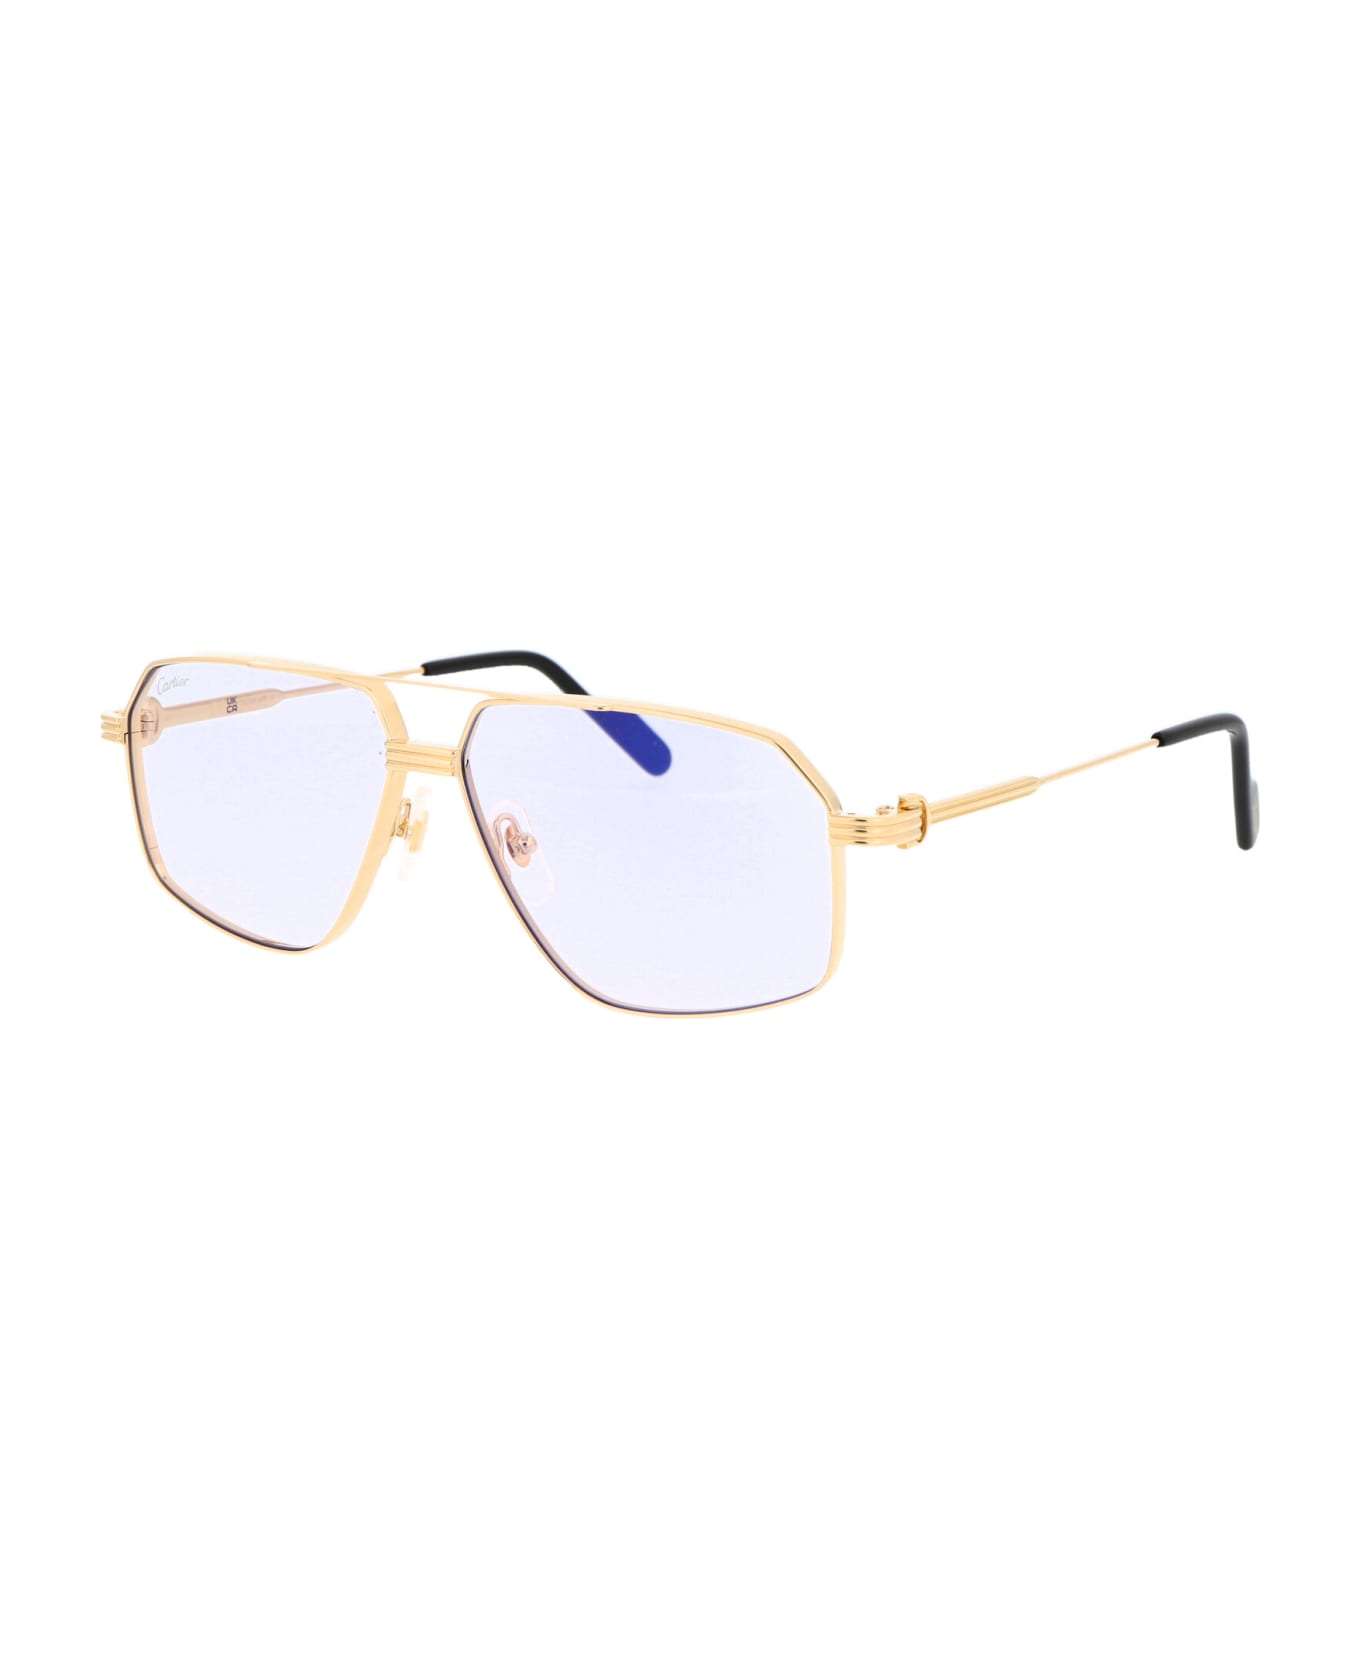 Cartier Eyewear Ct0270s Sunglasses - 009 GOLD GOLD LIGHT BLUE